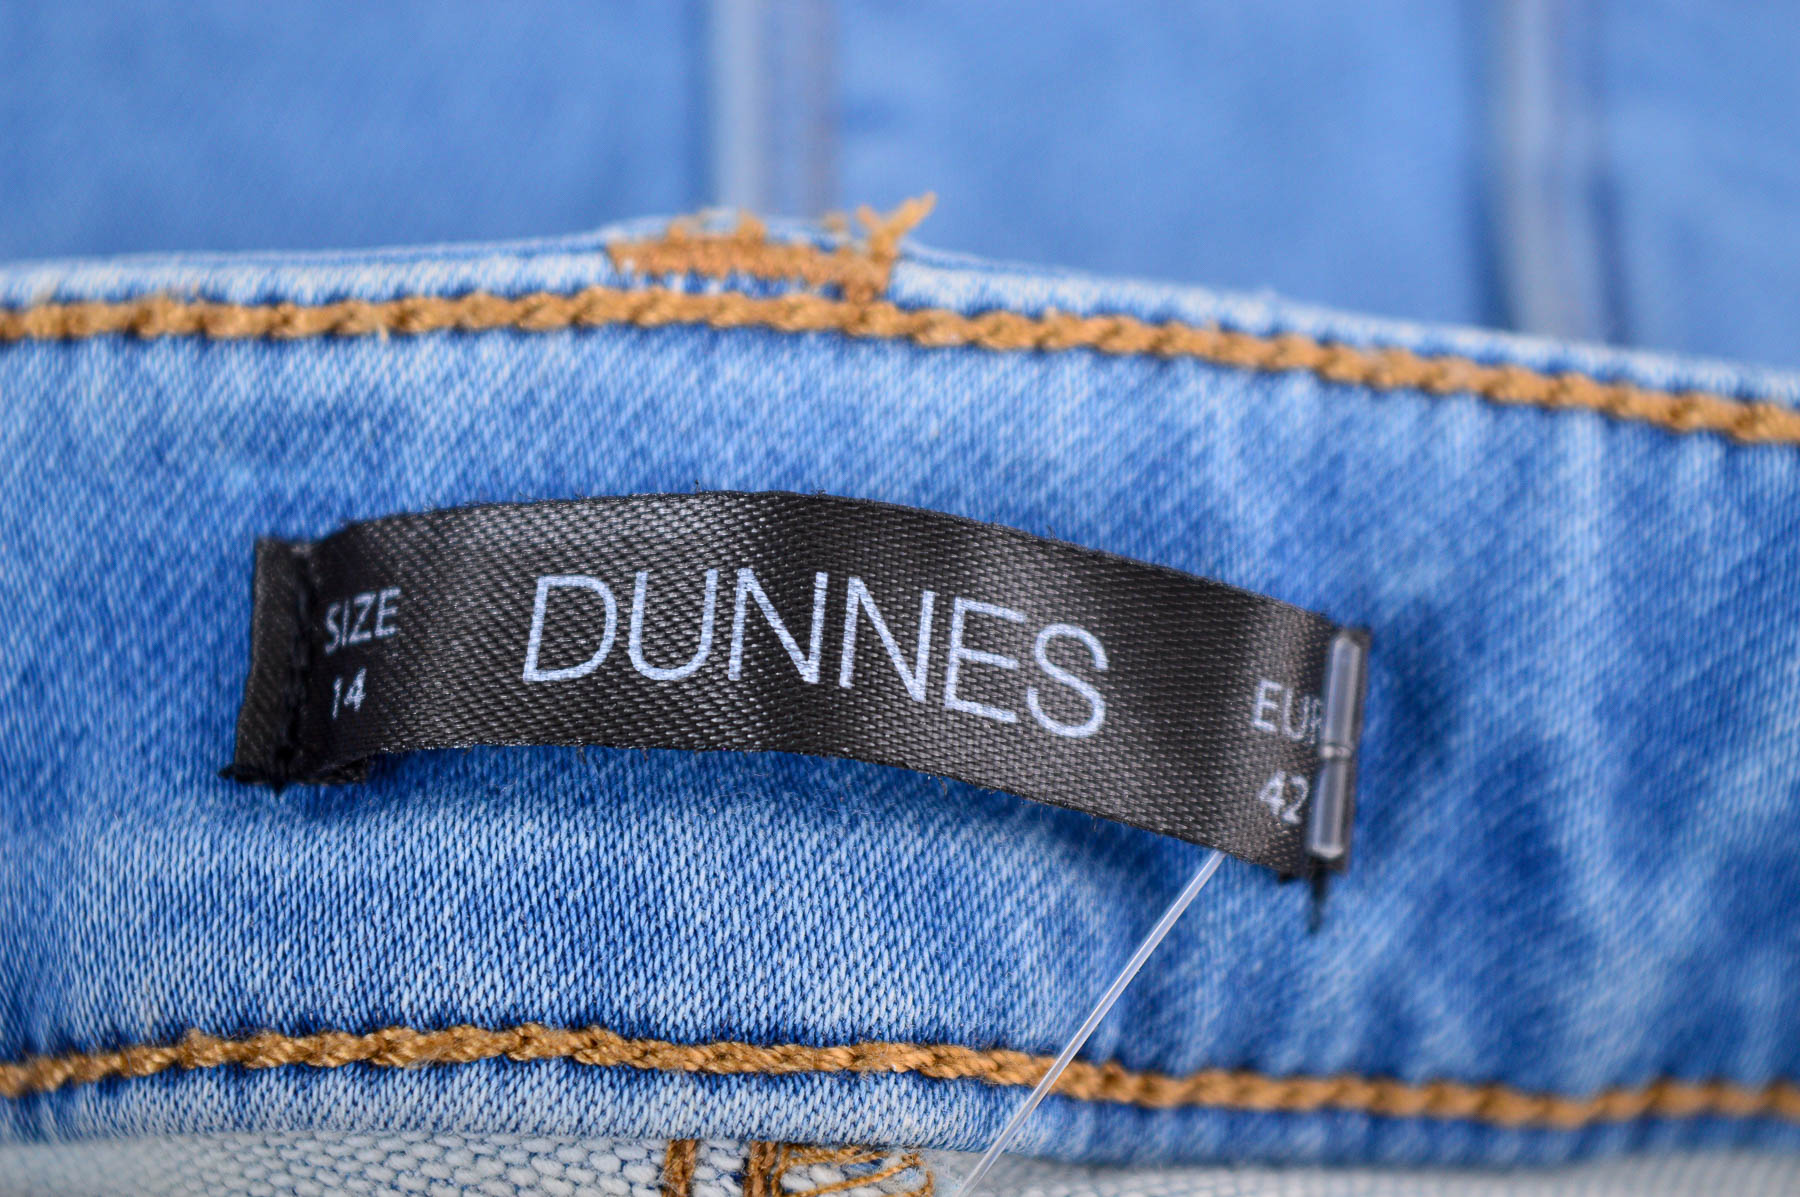 Female shorts - Dunnes - 2